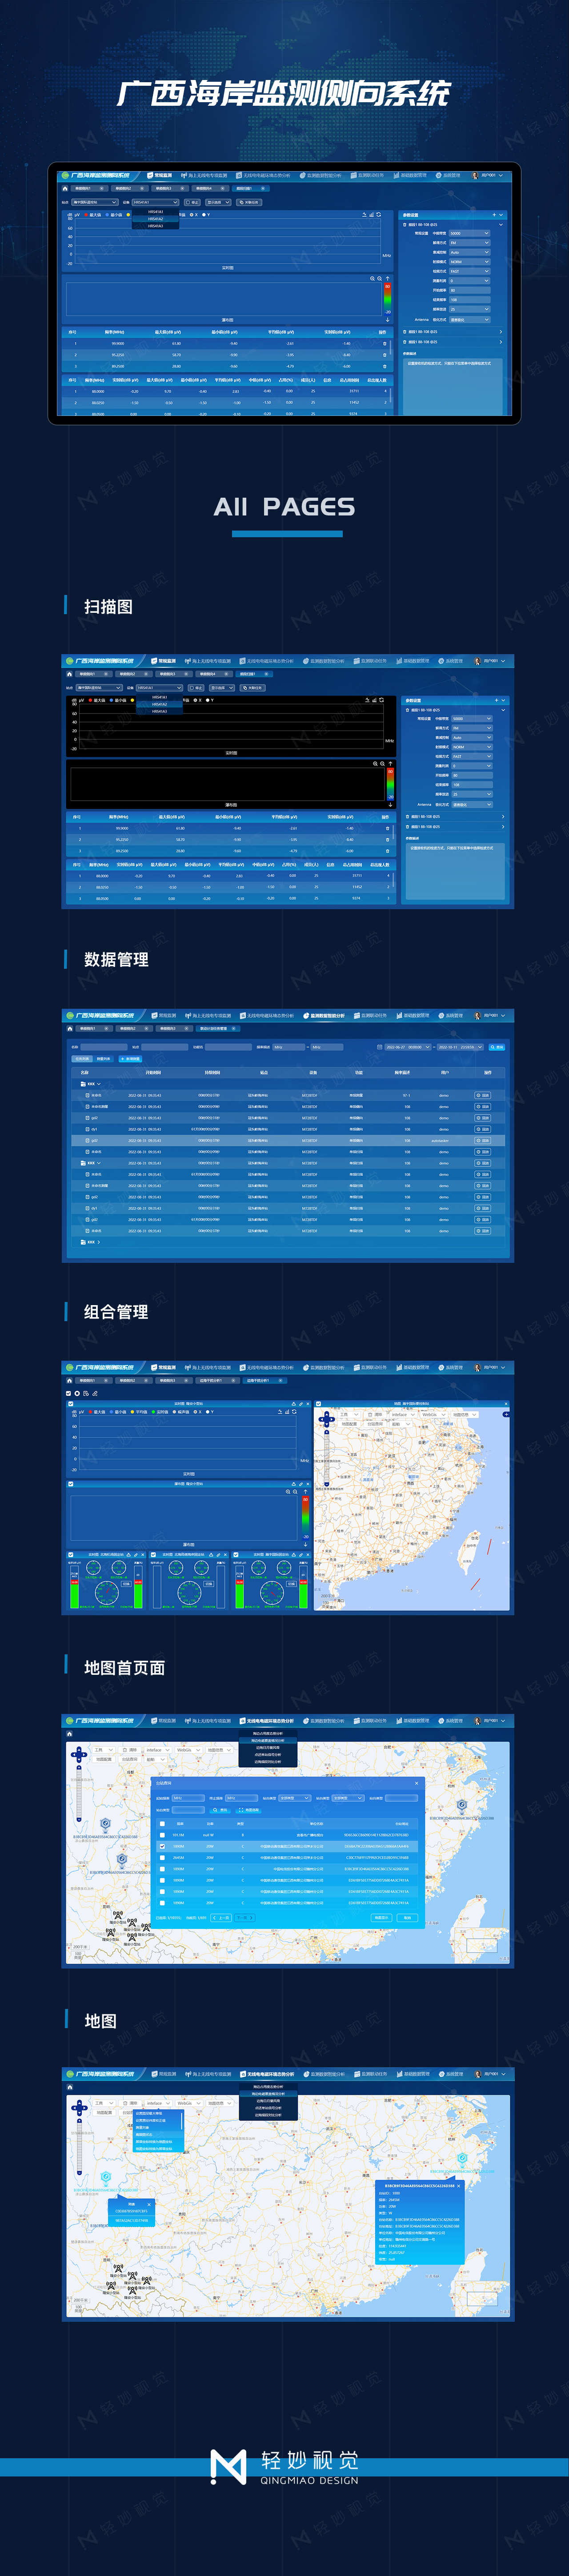 广西海岸监测侧向系统.jpg